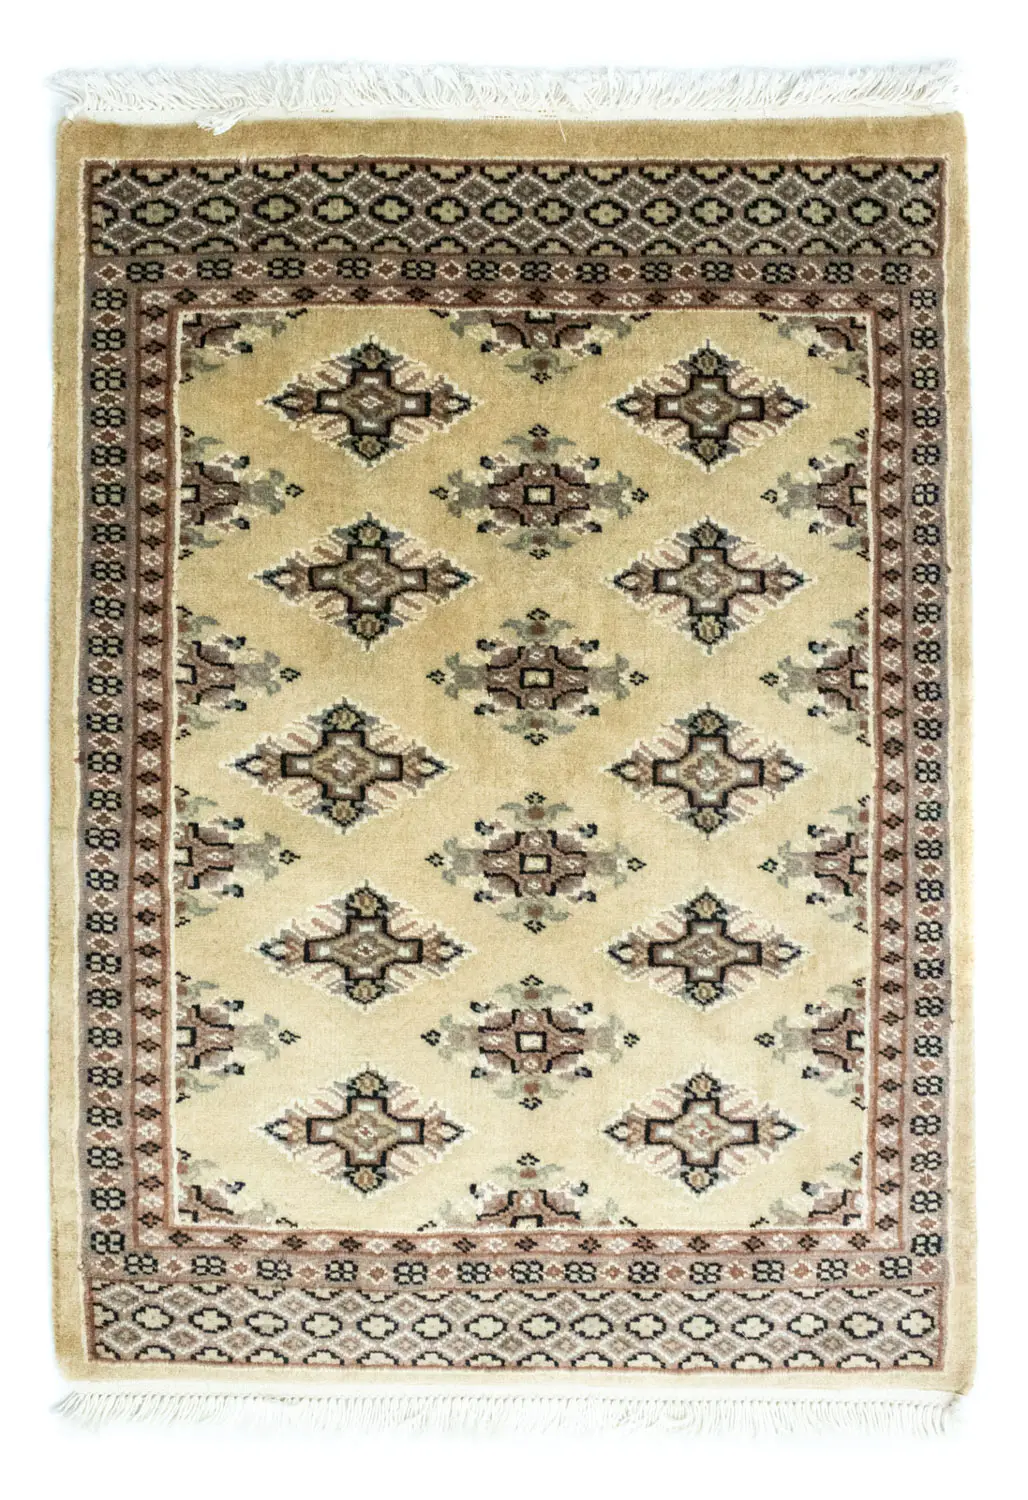 Pakistan Teppich - 87 x 62 cm - beige | Kurzflorteppiche